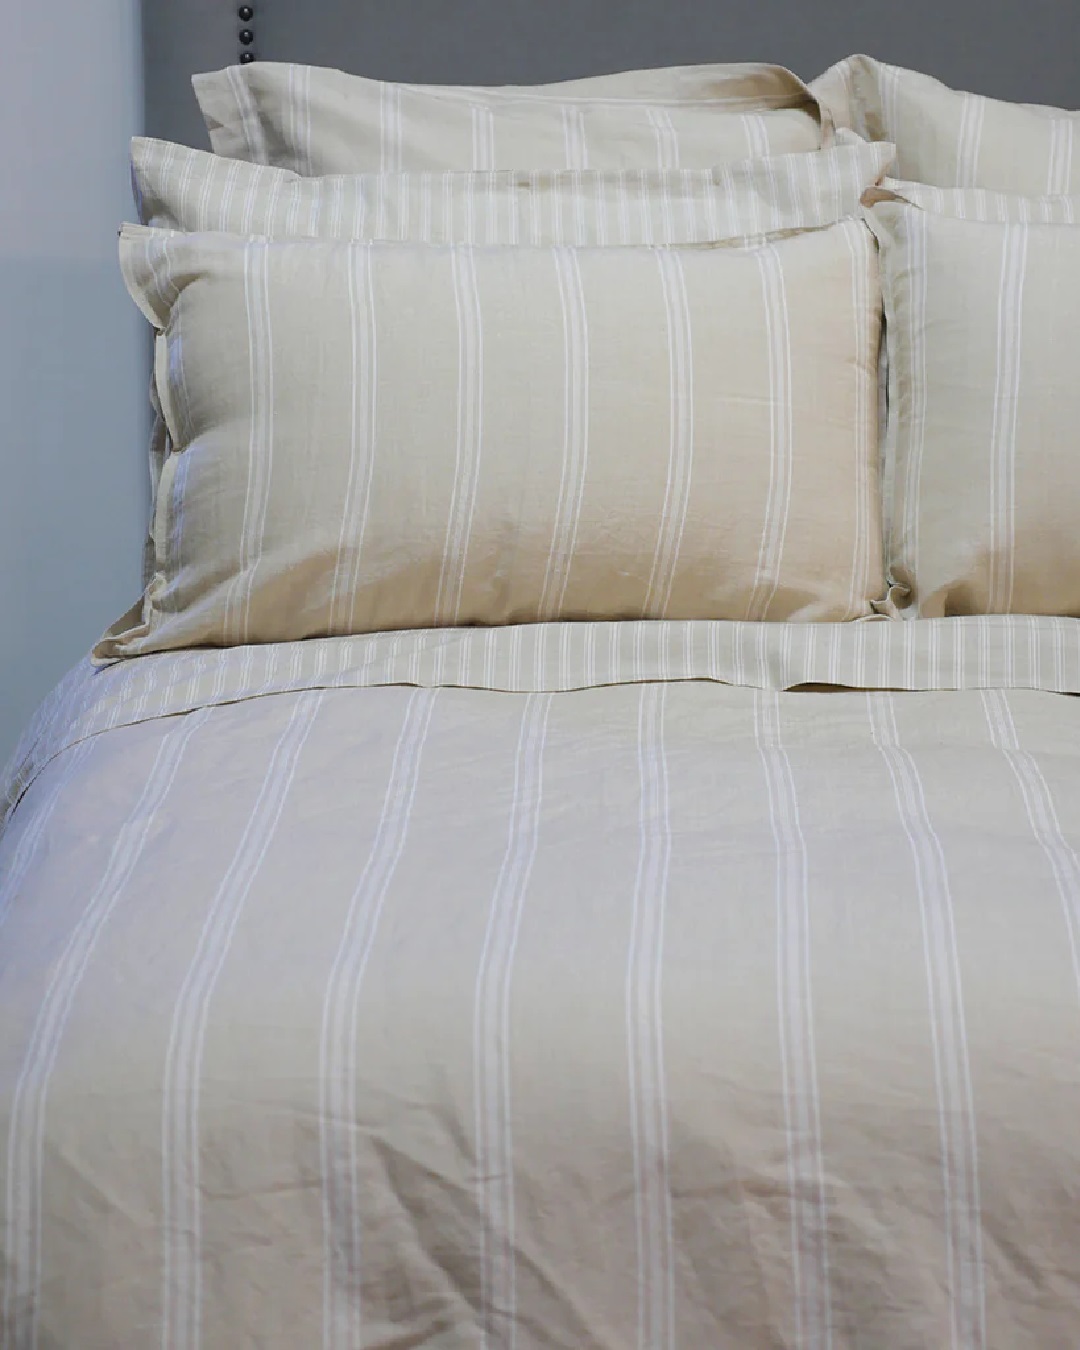 Off white striped duvet set on bed